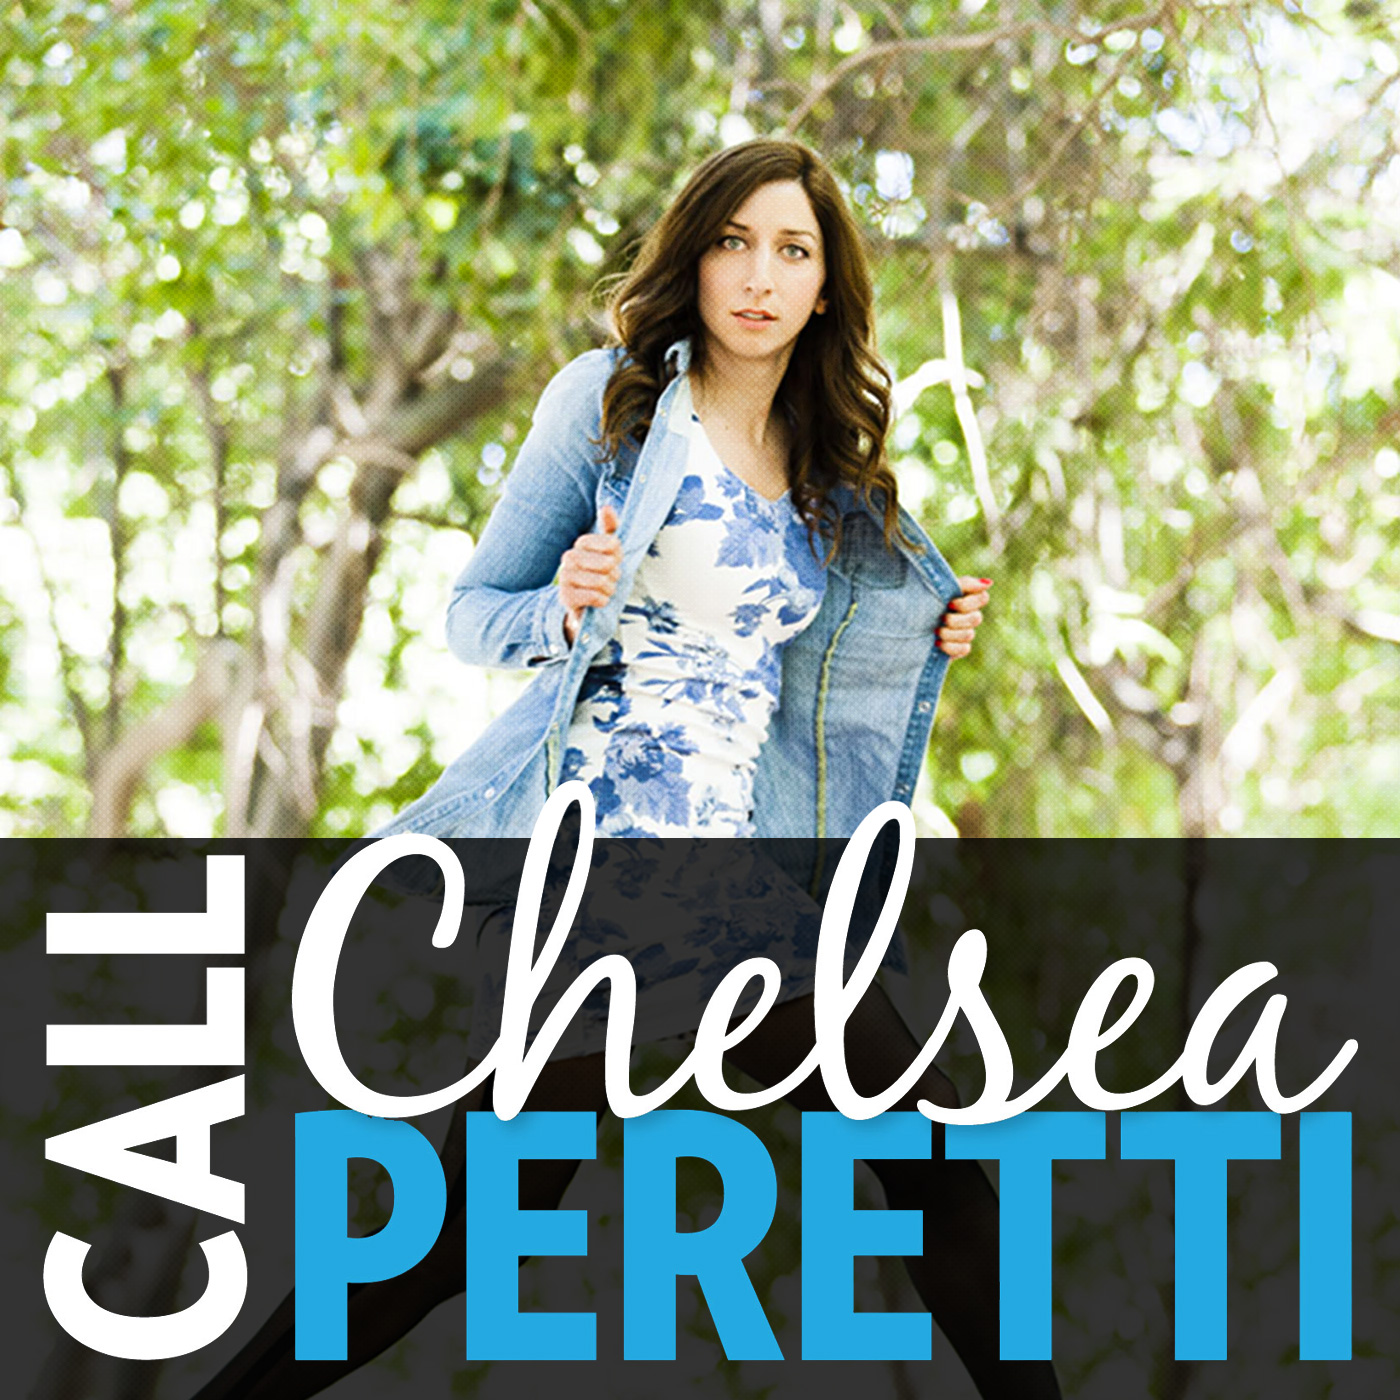 Call Chelsea Peretti